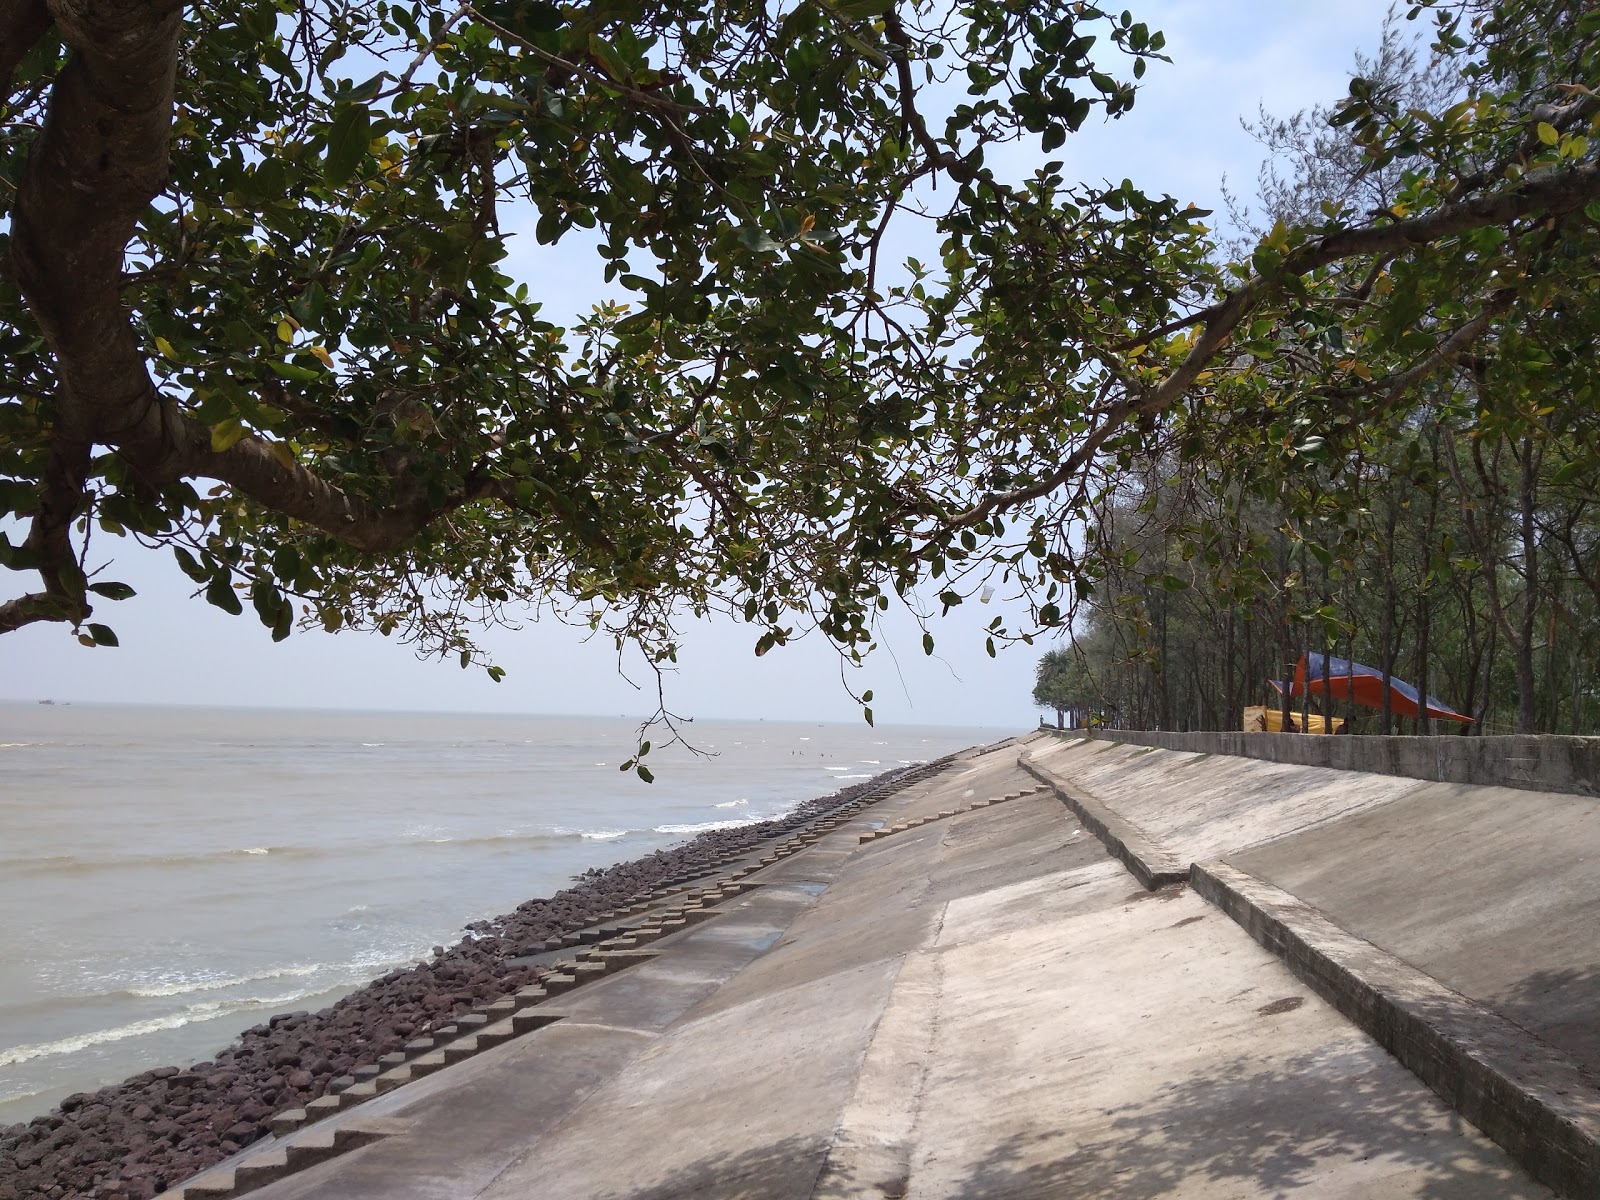 Fotografie cu Bankiput Sea Beach - locul popular printre cunoscătorii de relaxare